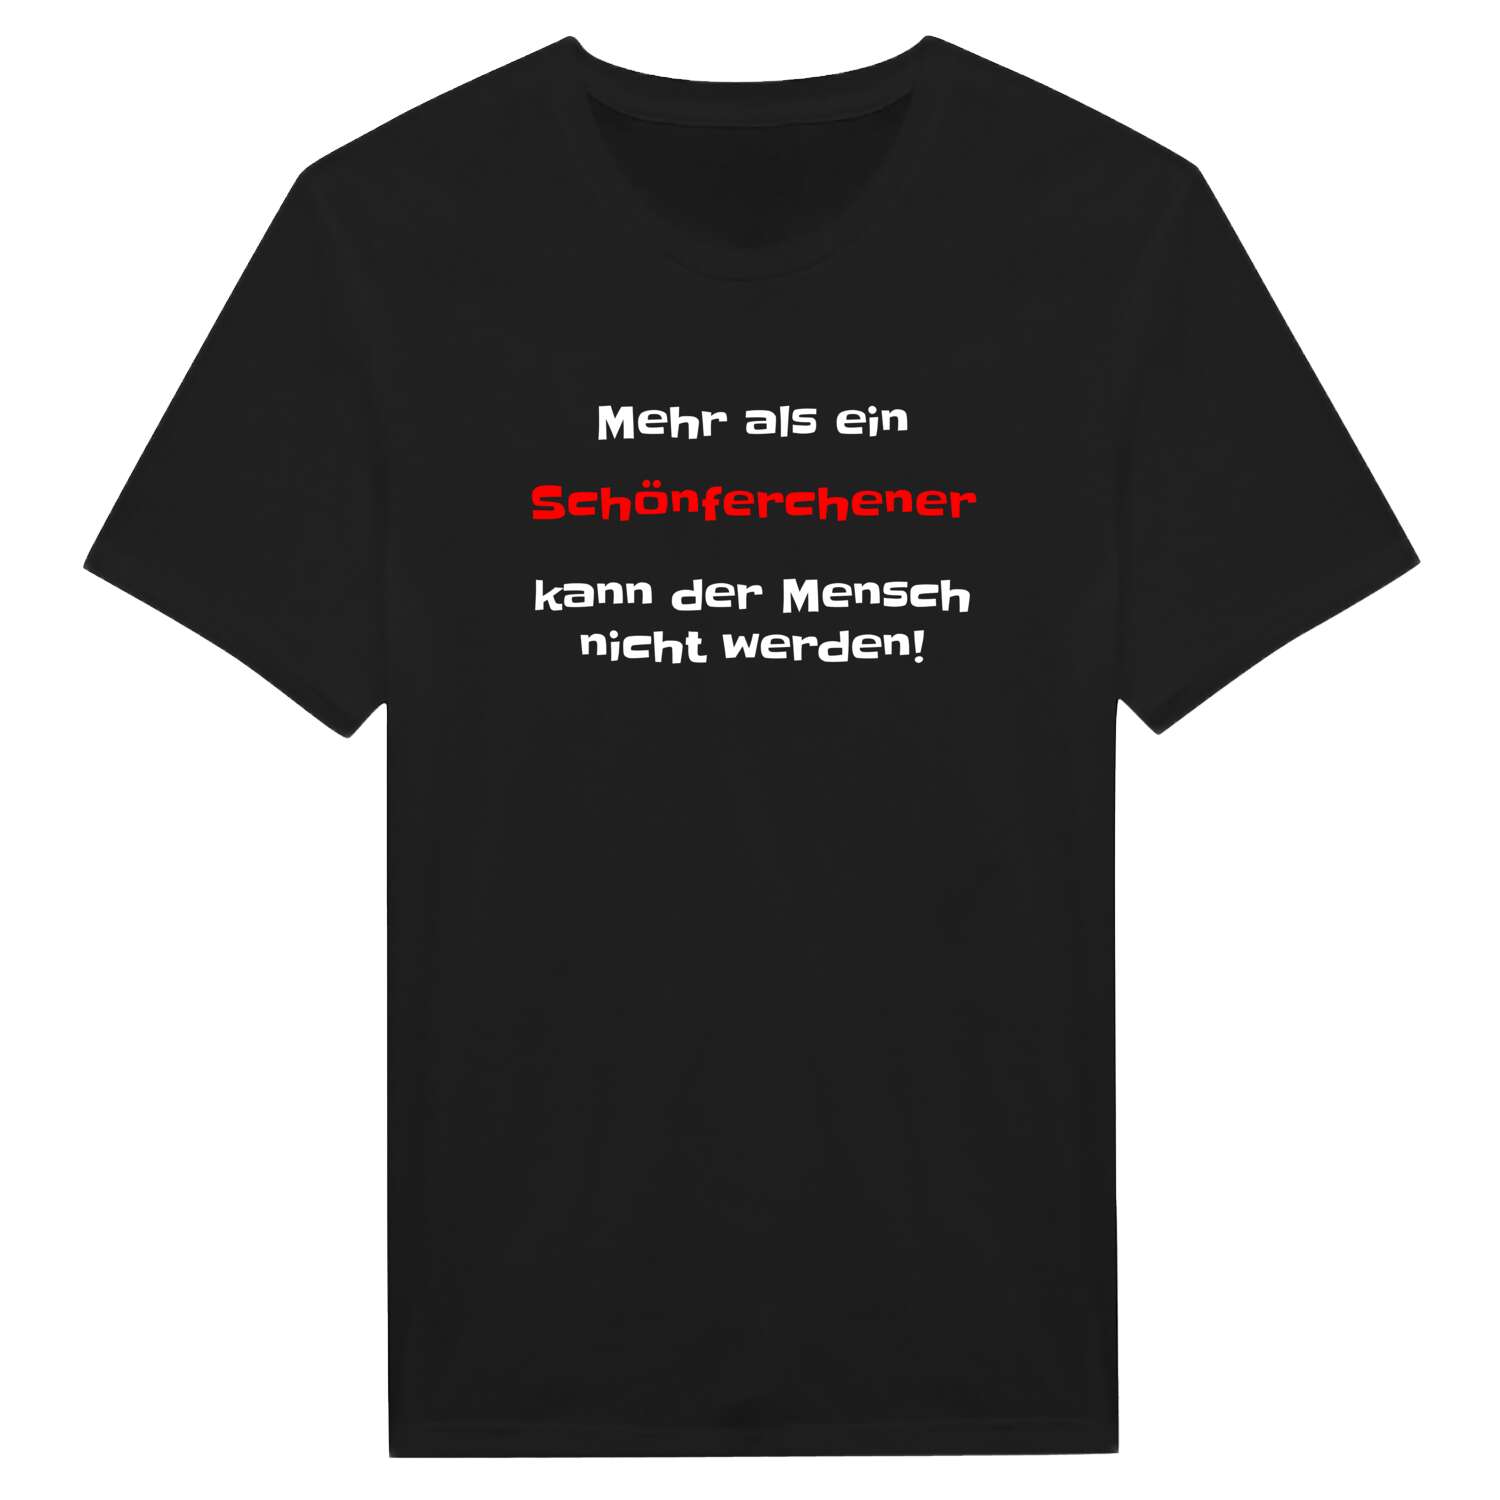 Schönferchen T-Shirt »Mehr als ein«